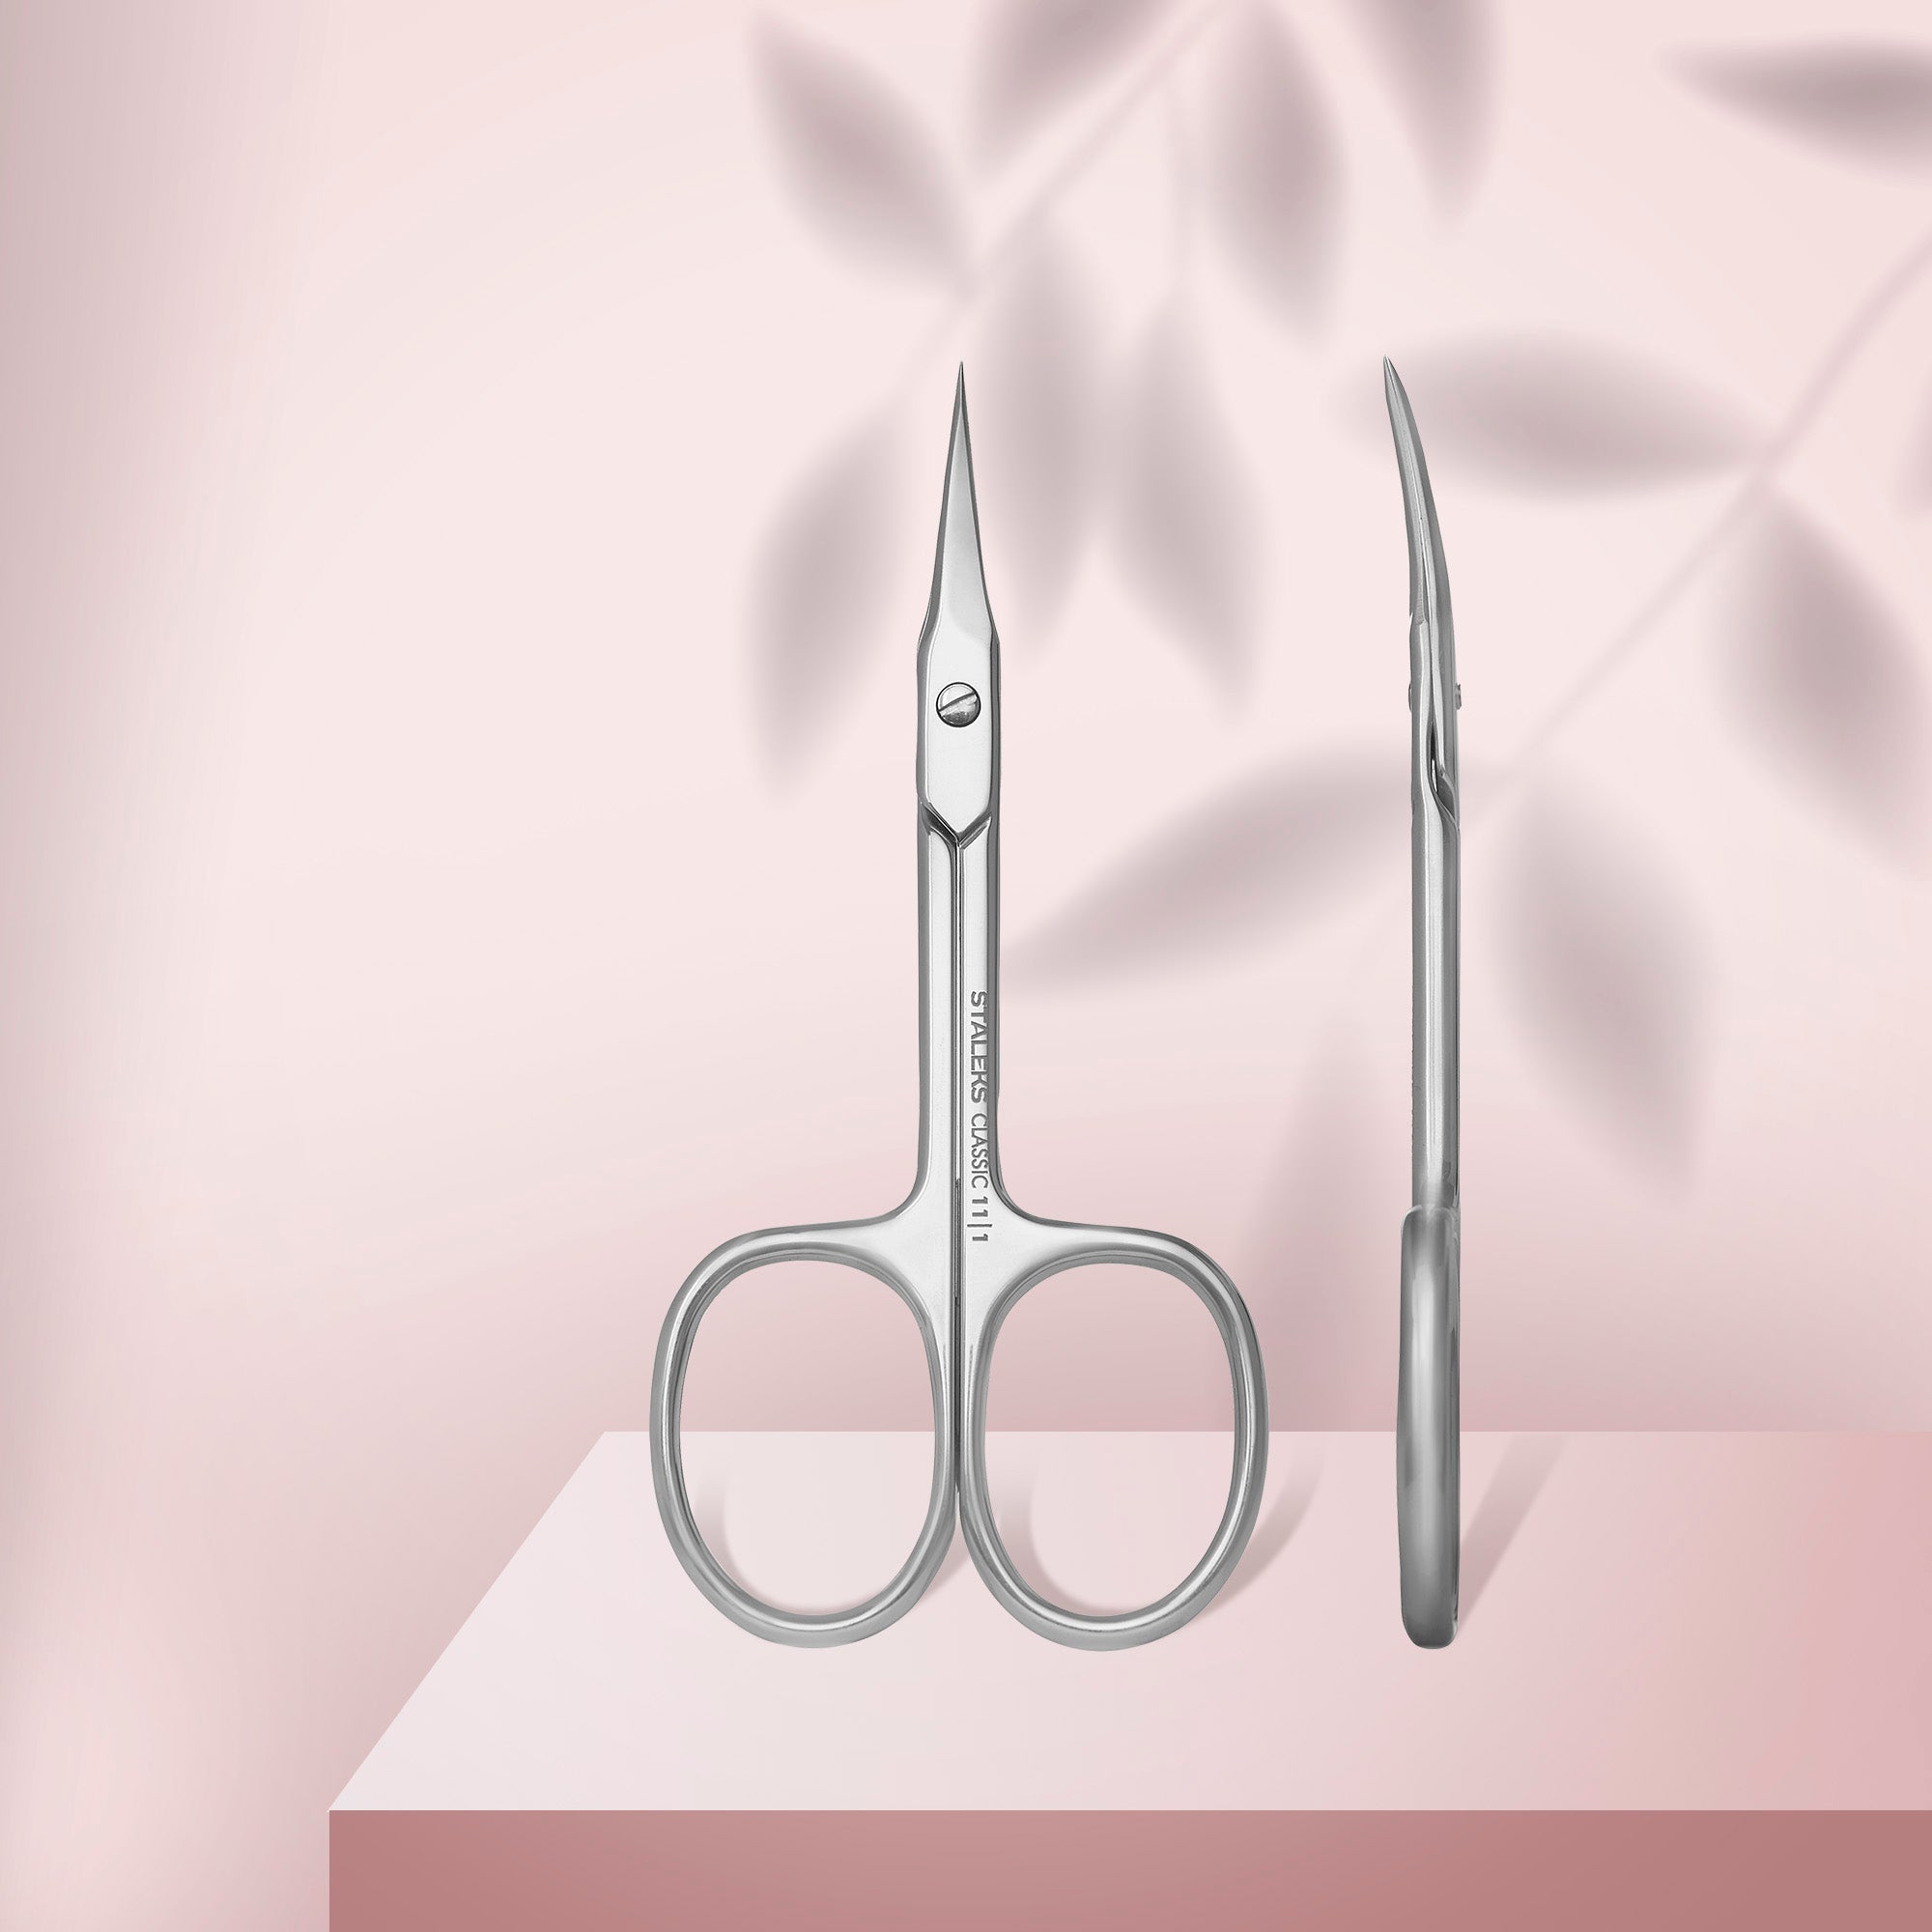 Cuticle Scissors - Classica Collection